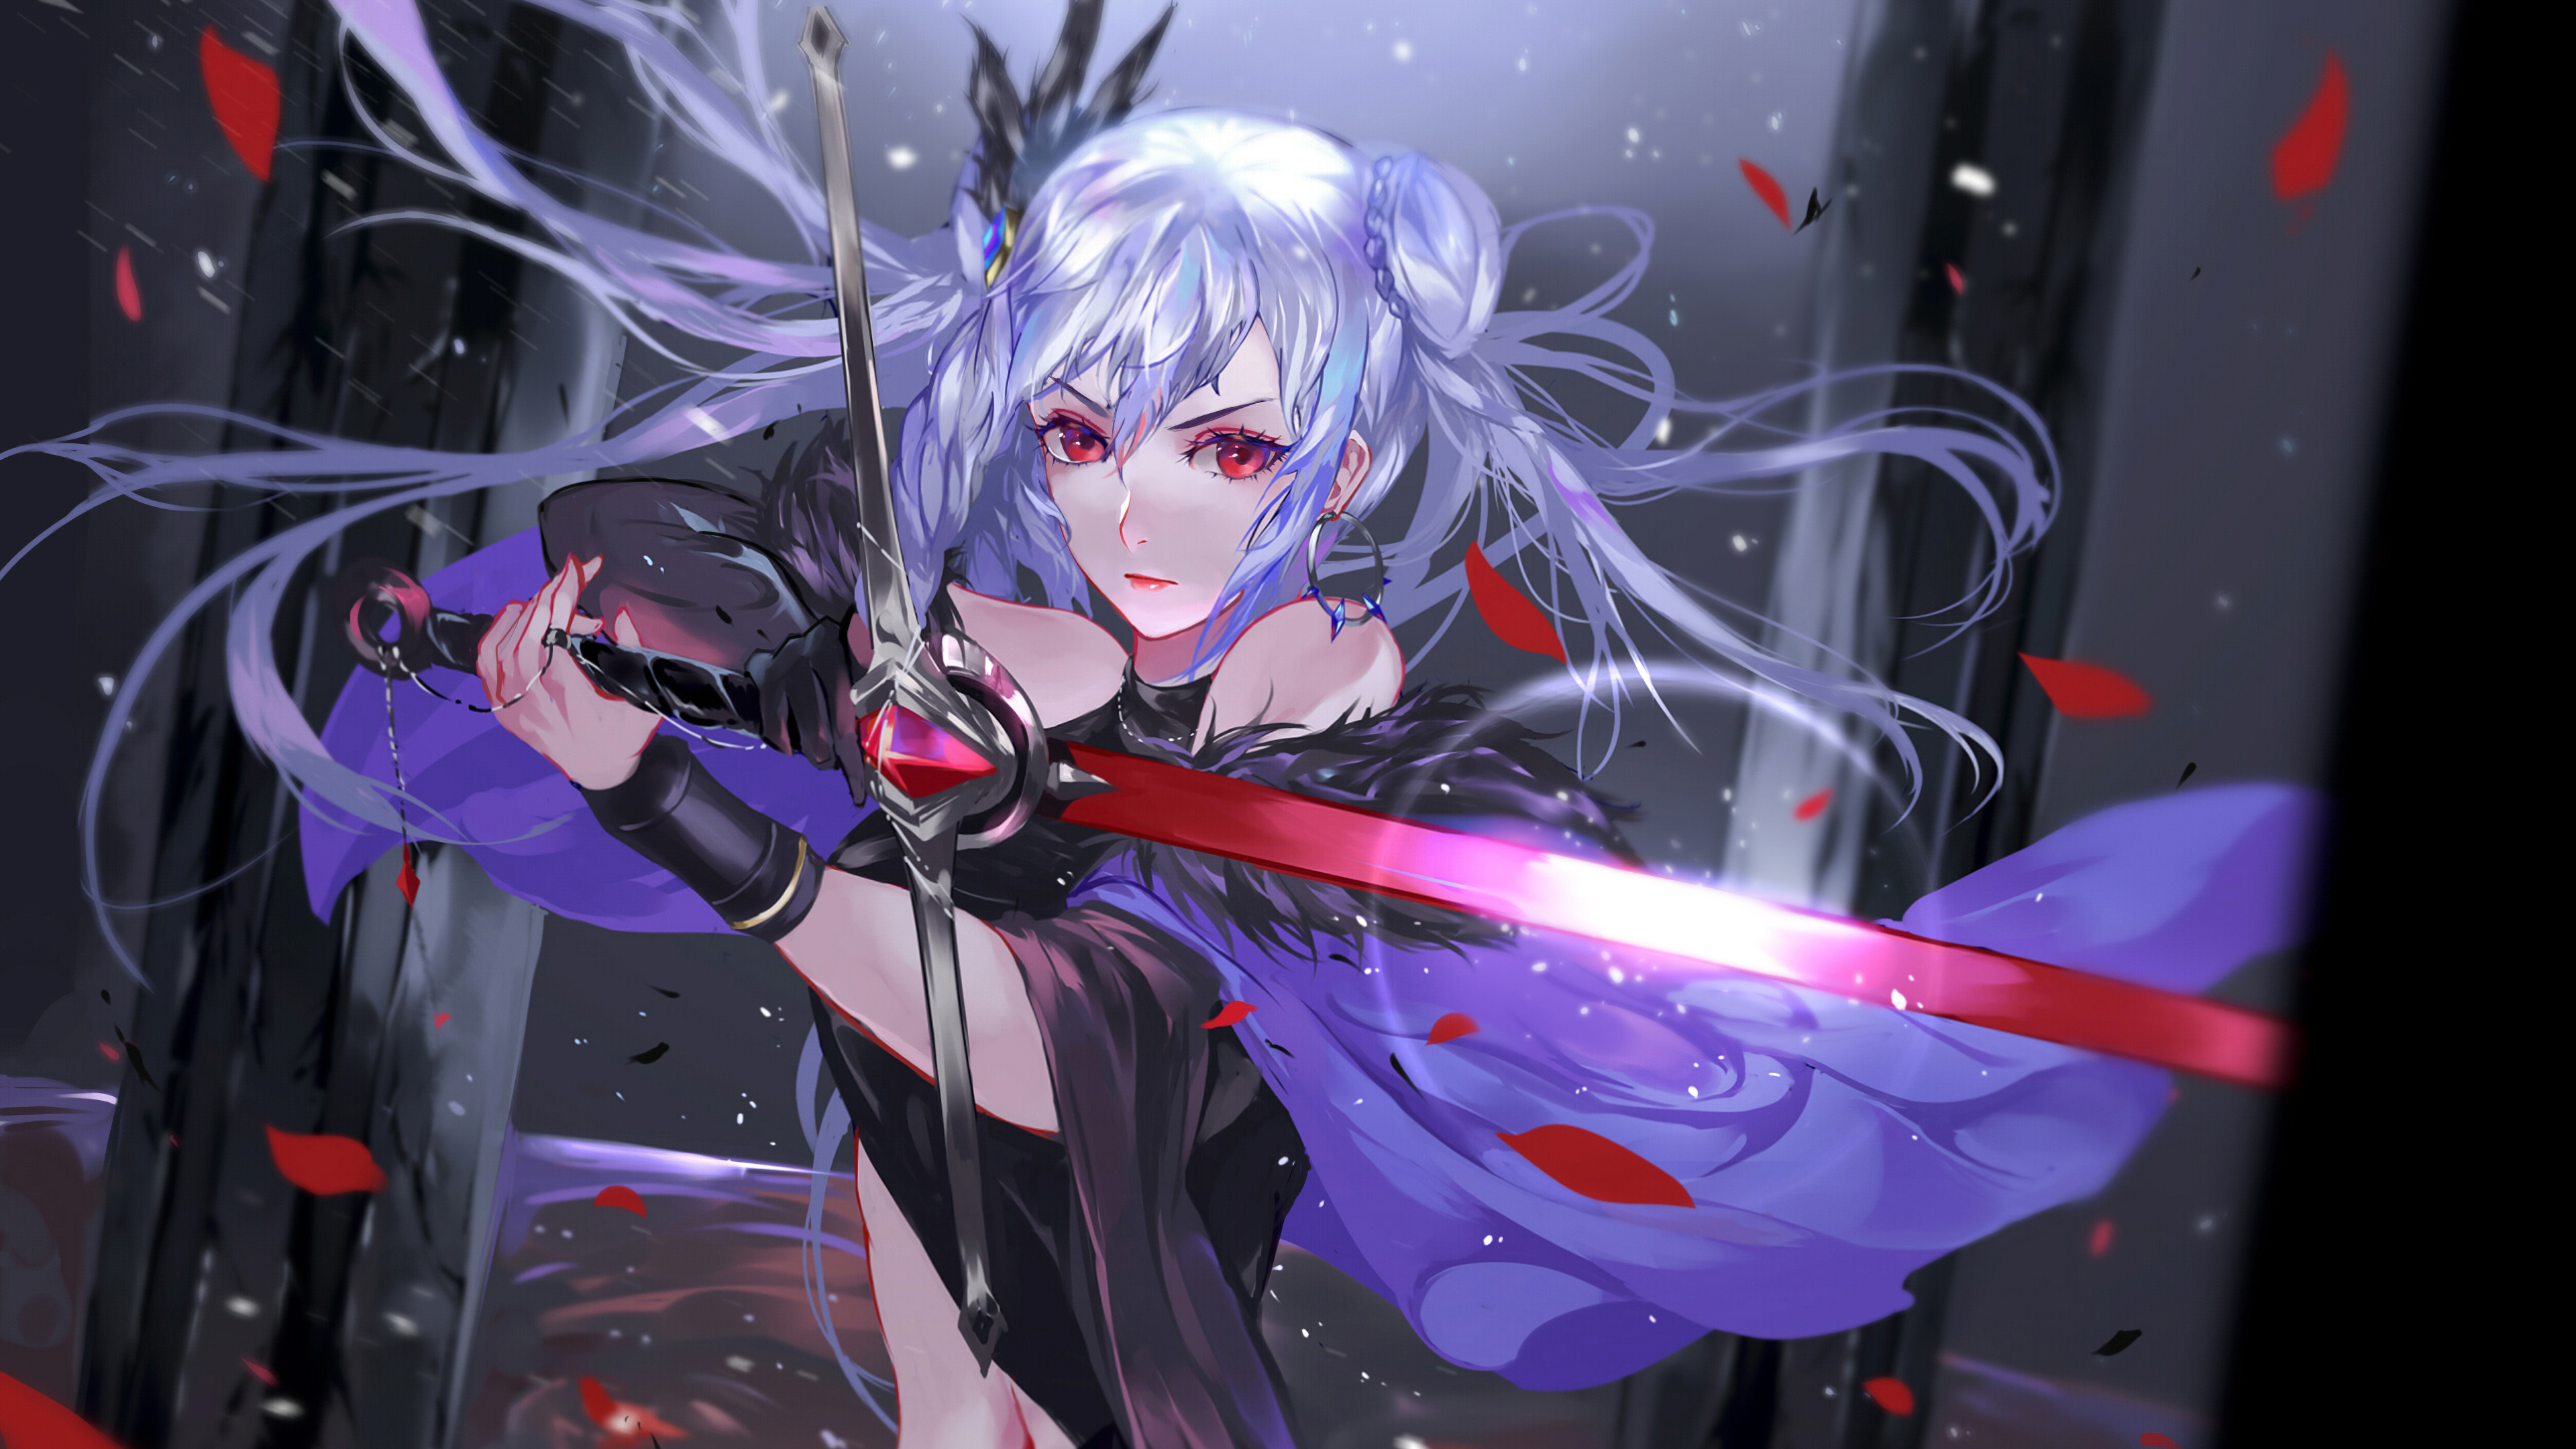 Anime Girl Warrior Fantasy Sword 4k 3840x2160 11 Wallpaper Pc 